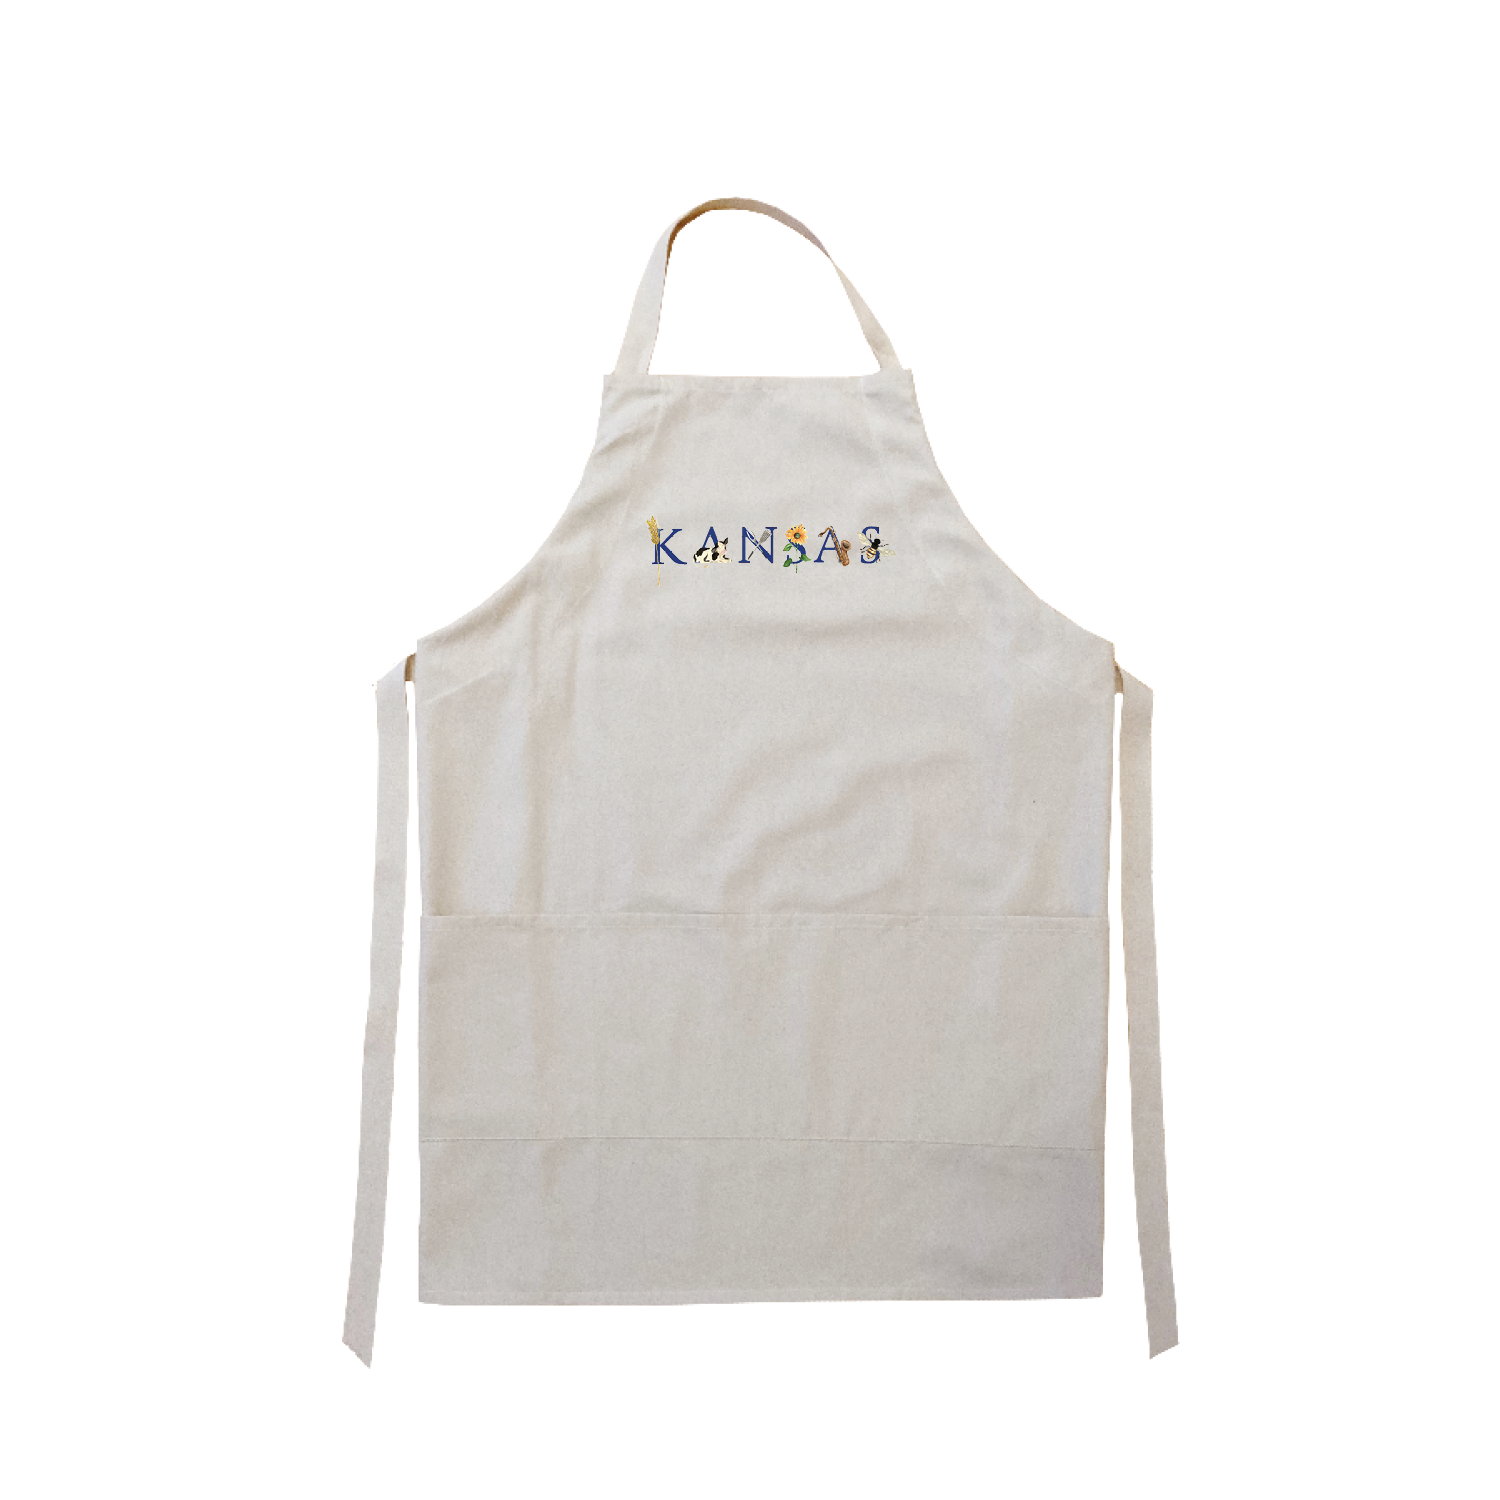 Kansas apron